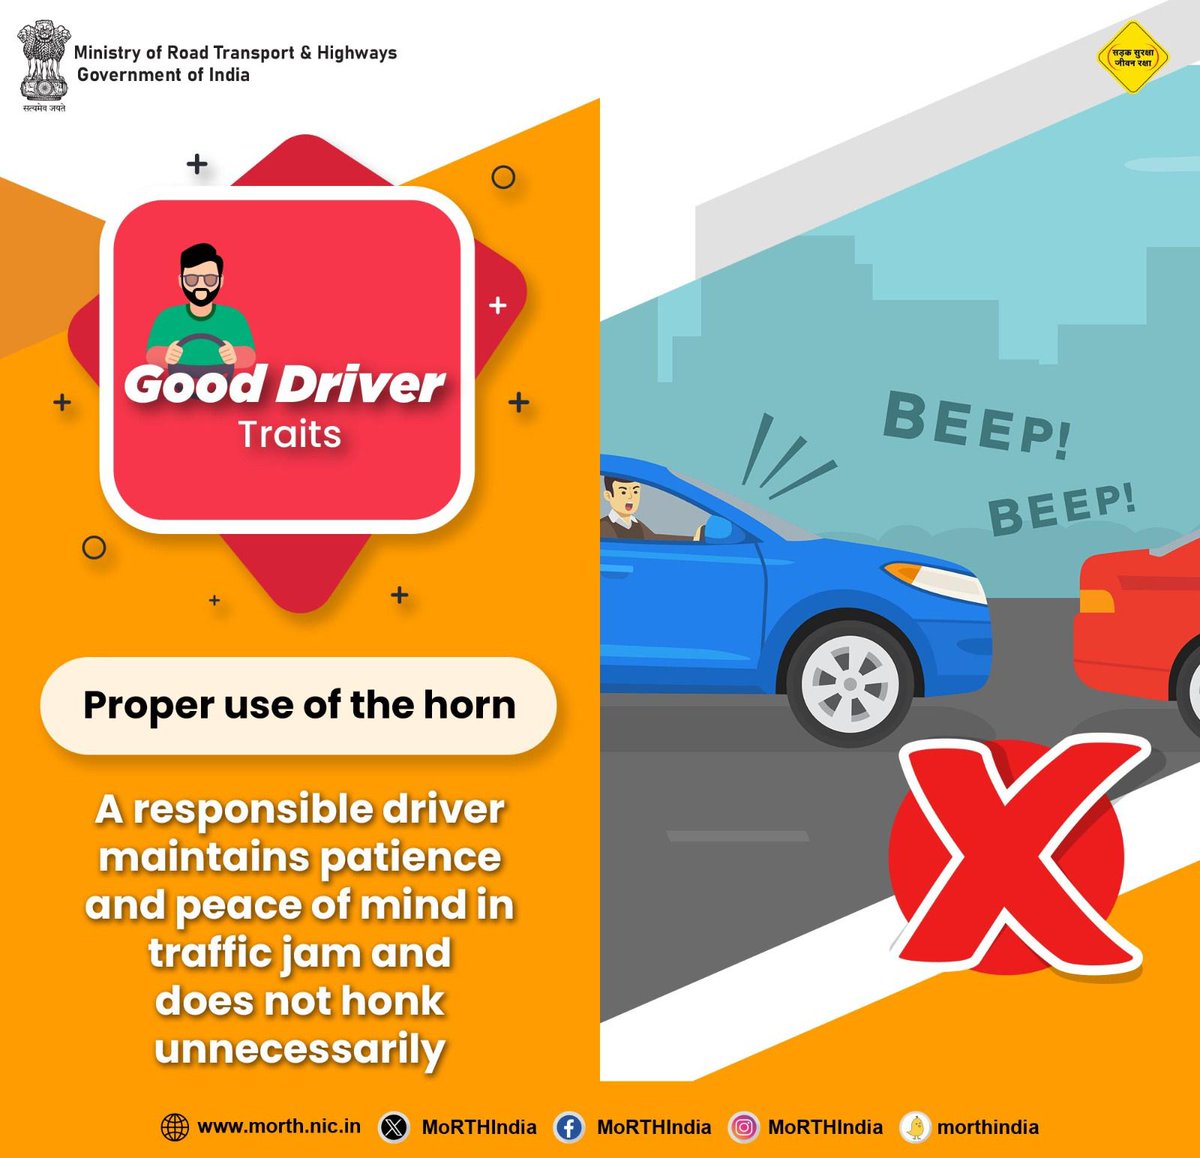 Safe drive, stay alive #SadakSurakshaJeevanRaksha #DriveResponsibly